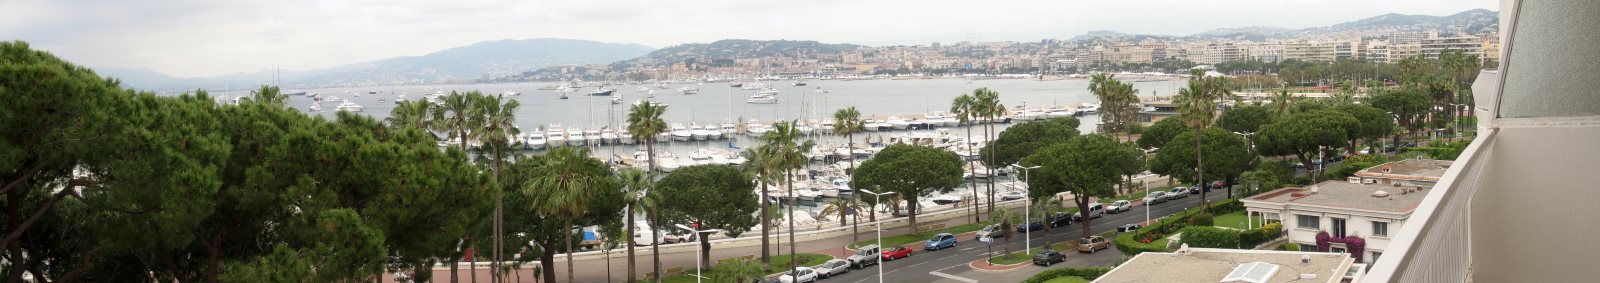 Panoramique de la Croisette, Cannes